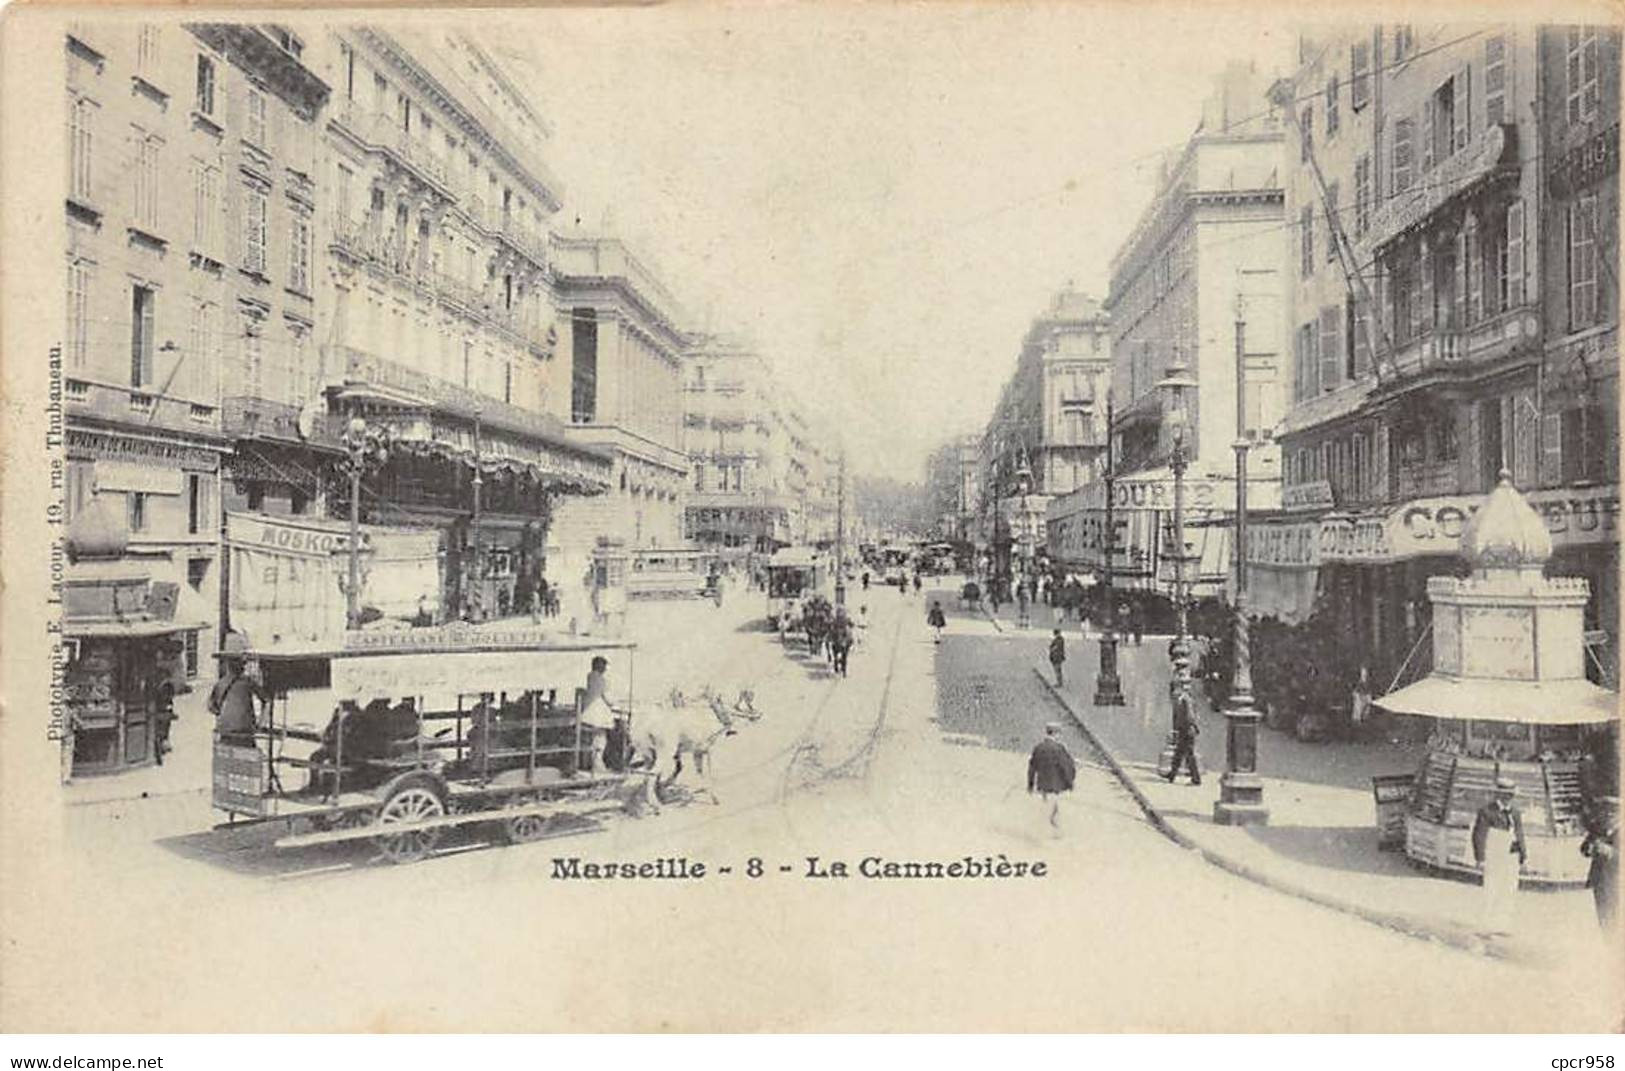 13 - MARSEILLE - SAN25187 - La Cannebière - Canebière, Stadtzentrum